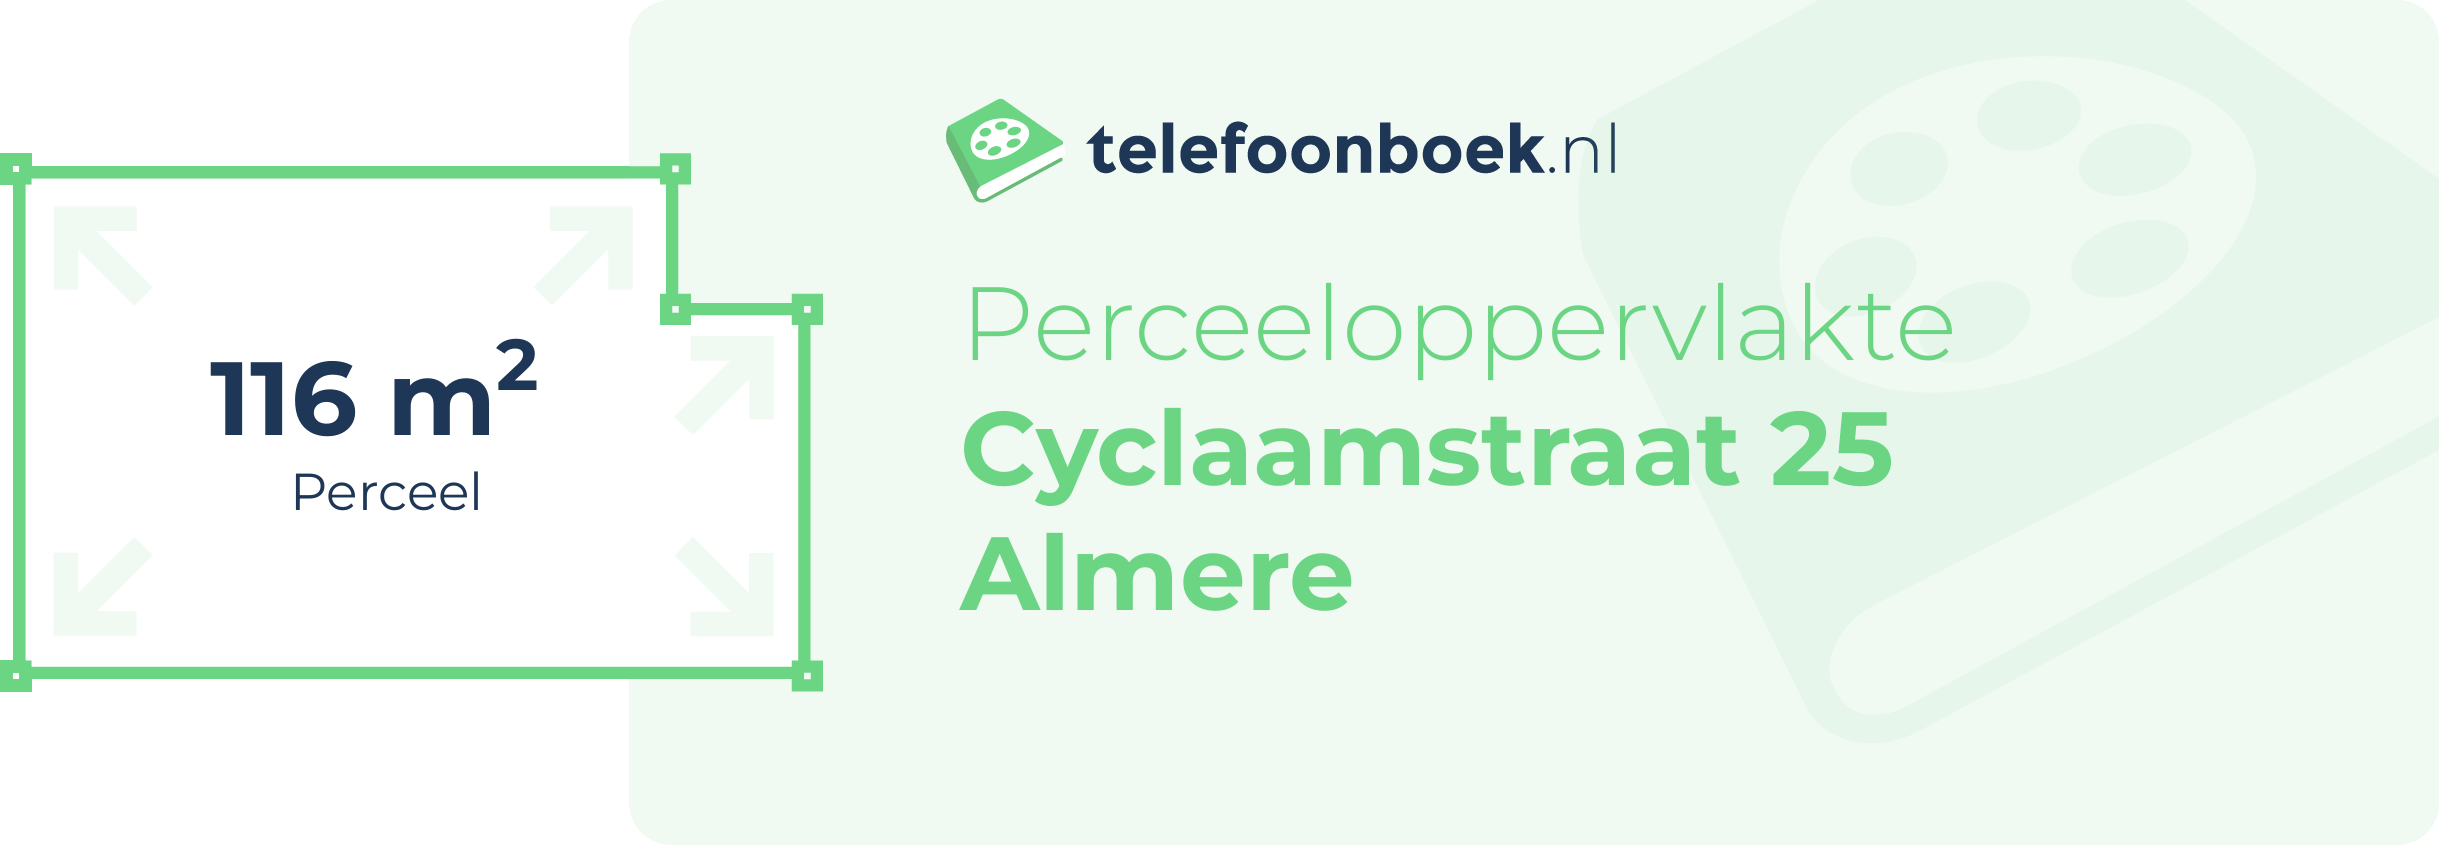 Perceeloppervlakte Cyclaamstraat 25 Almere